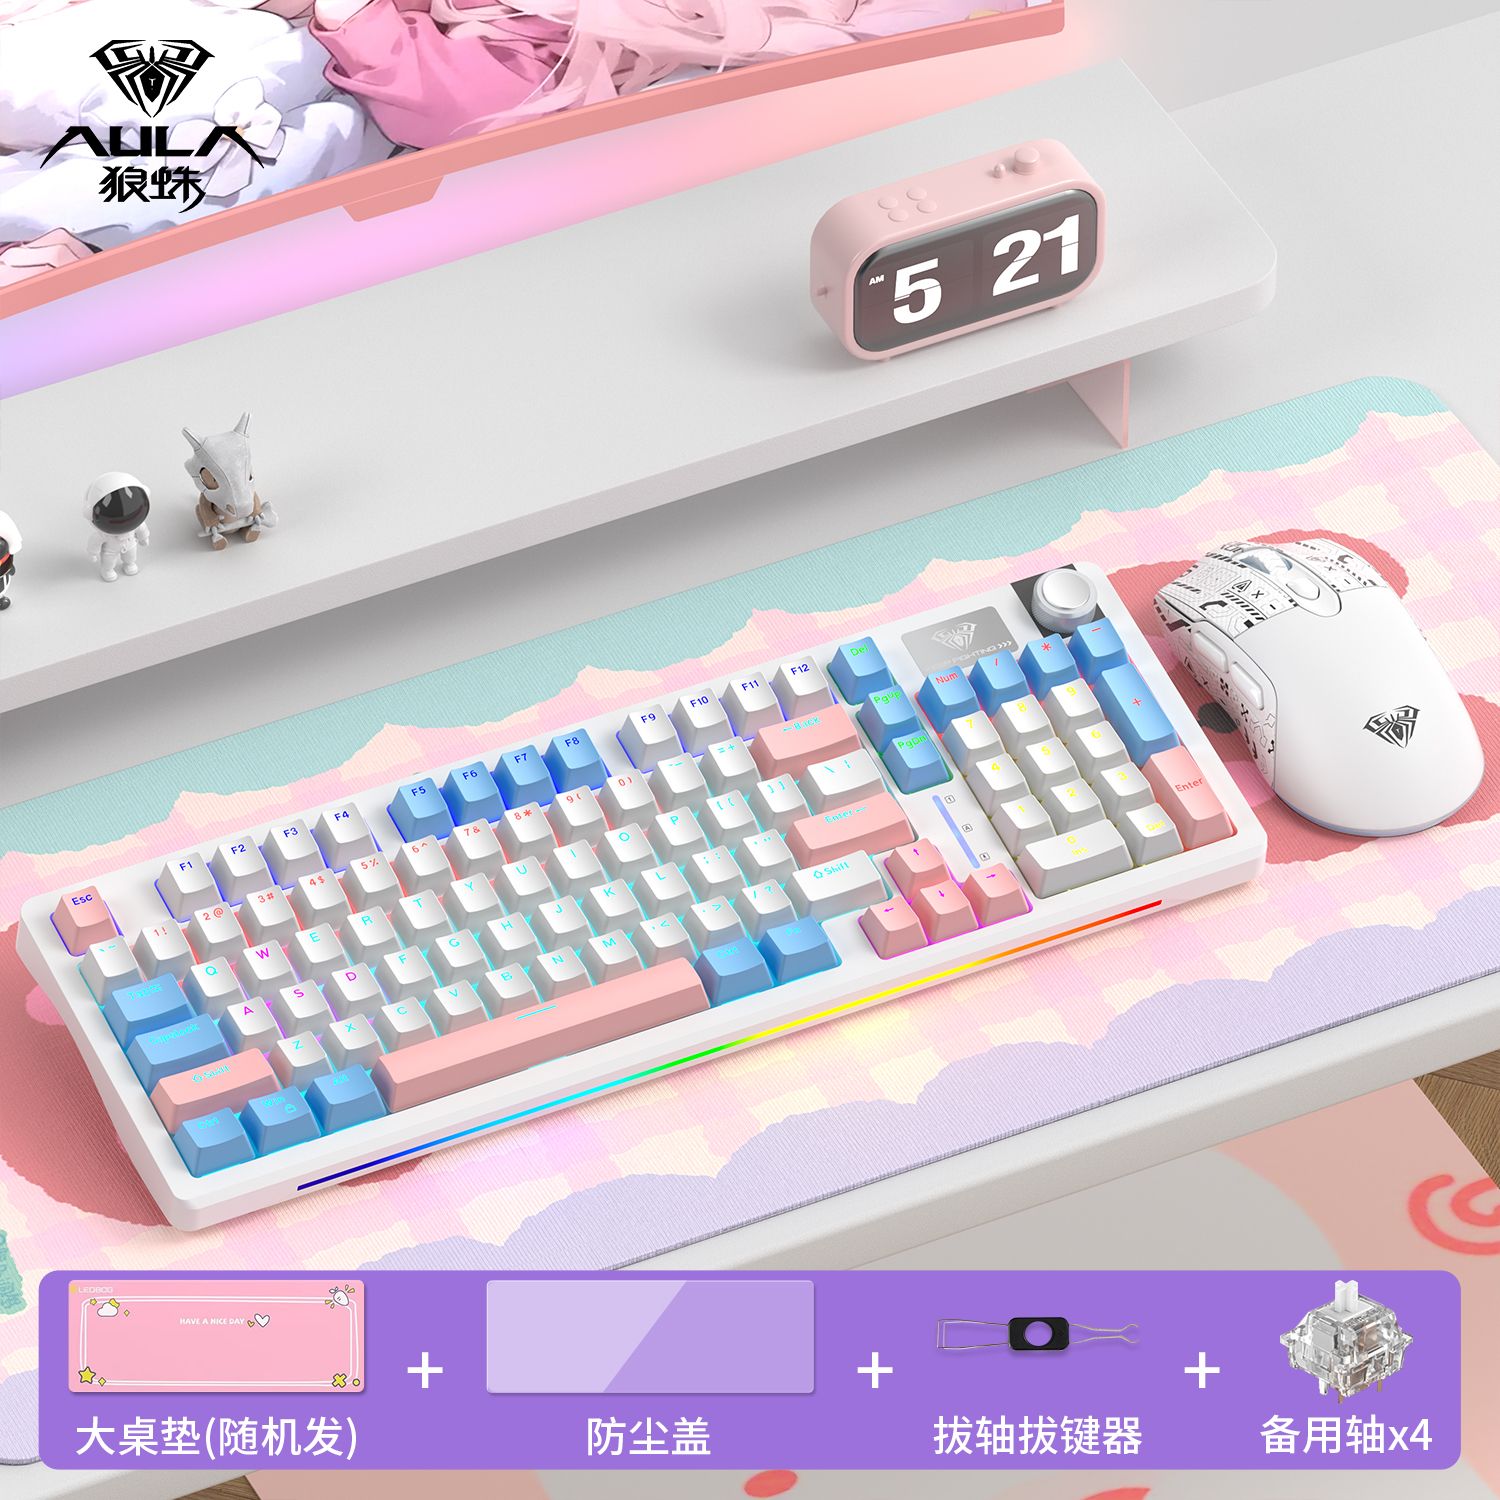 AULA 狼蛛 S98 三模机械键盘 119元